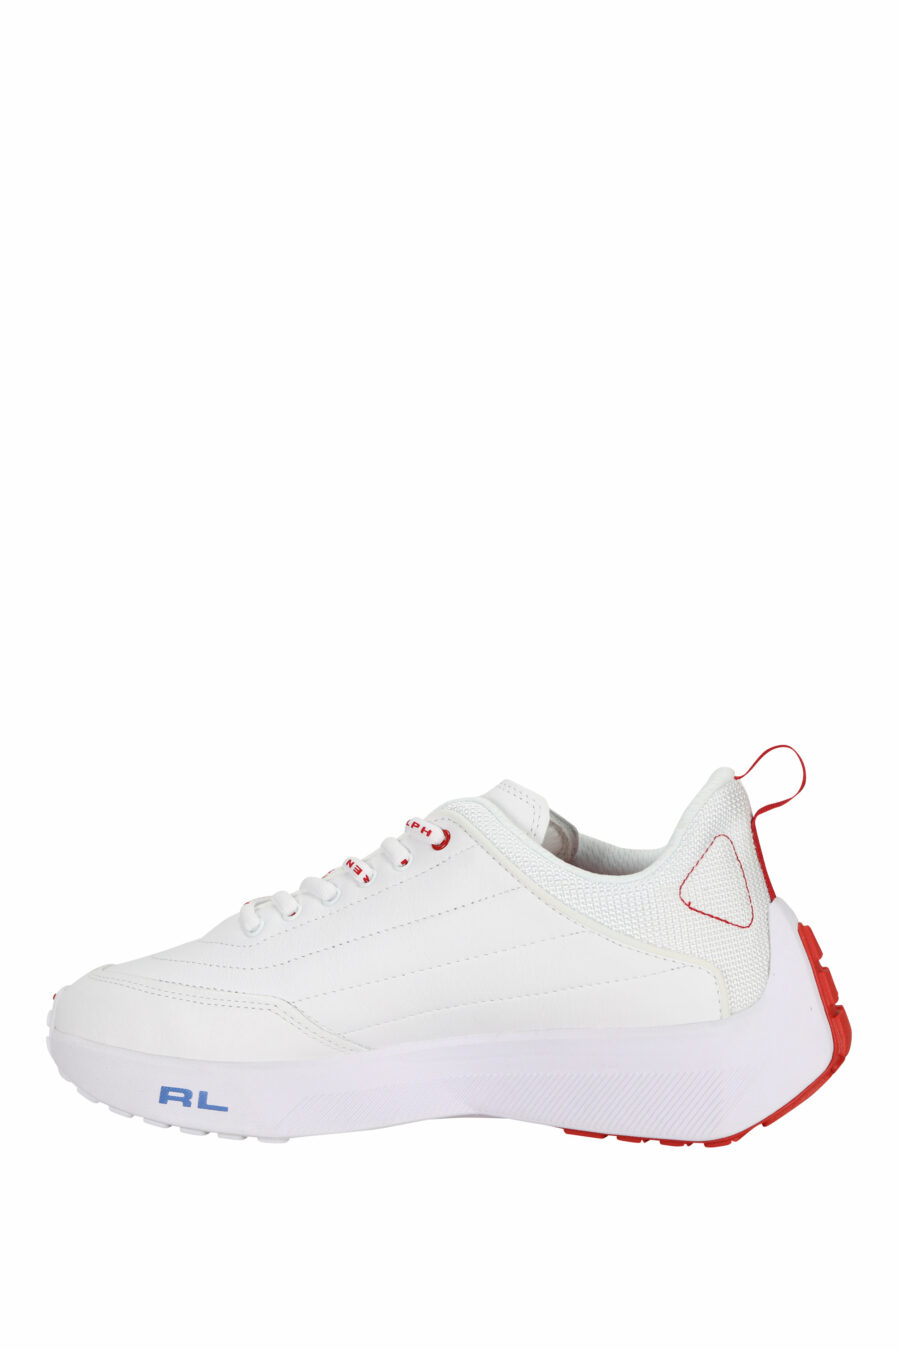 Zapatillas blancas con minilogo y detalles rojos - 3616535649279 2